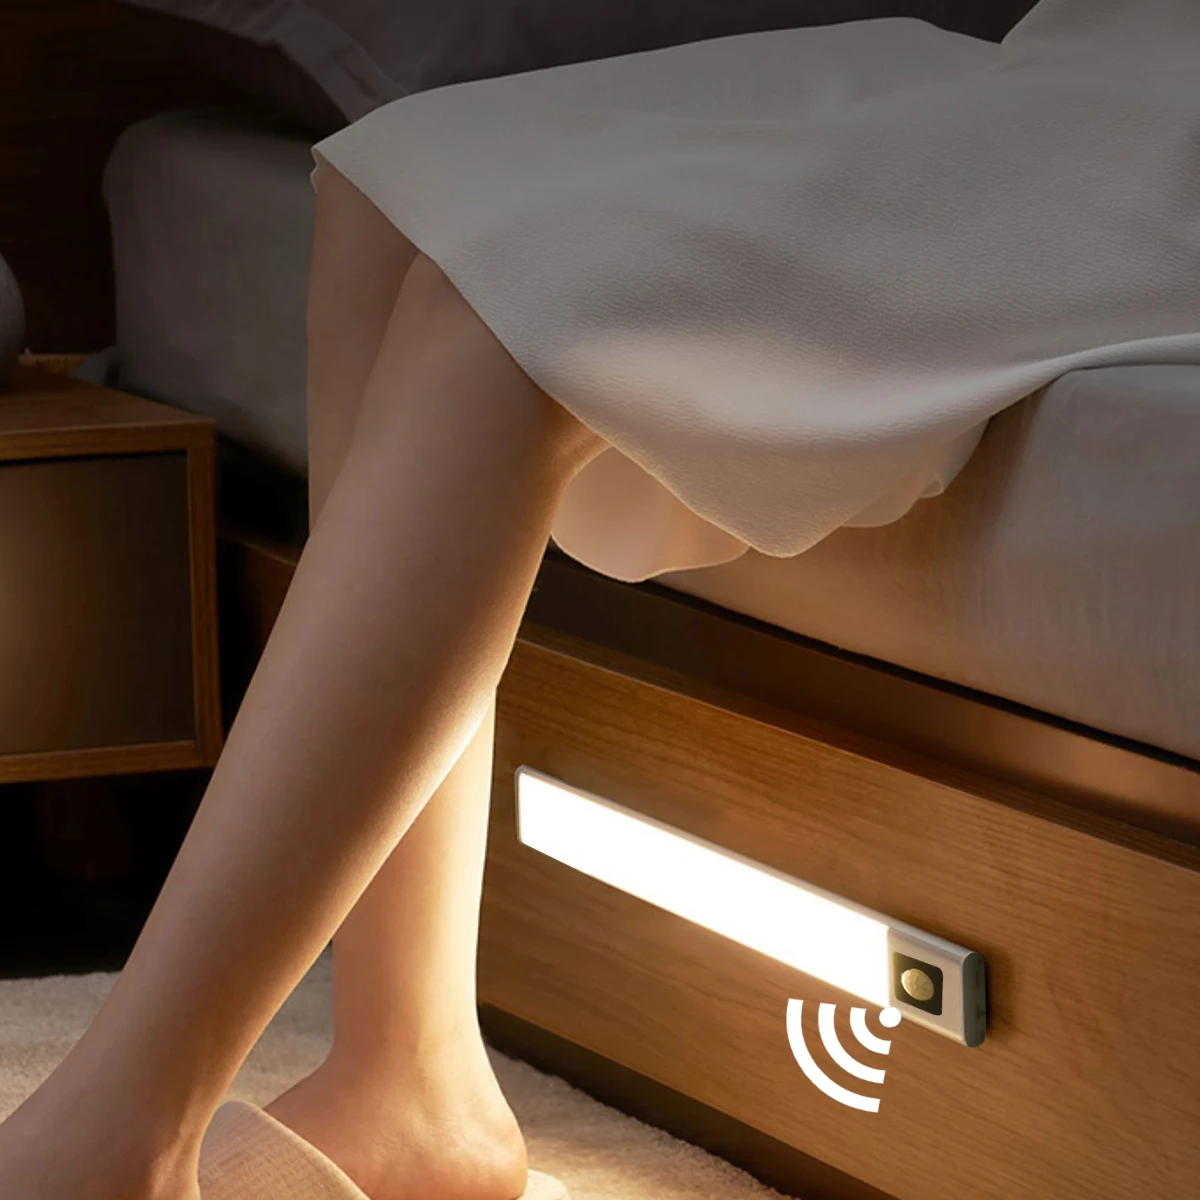 

Светодиодный светильник с пассивным инфракрасным датчиком движения, USB лампа для шкафа, гардероба, кровати, светодиодный ночсветильник для шкафа, подсветсветильник для спальни, чулана, лестницы